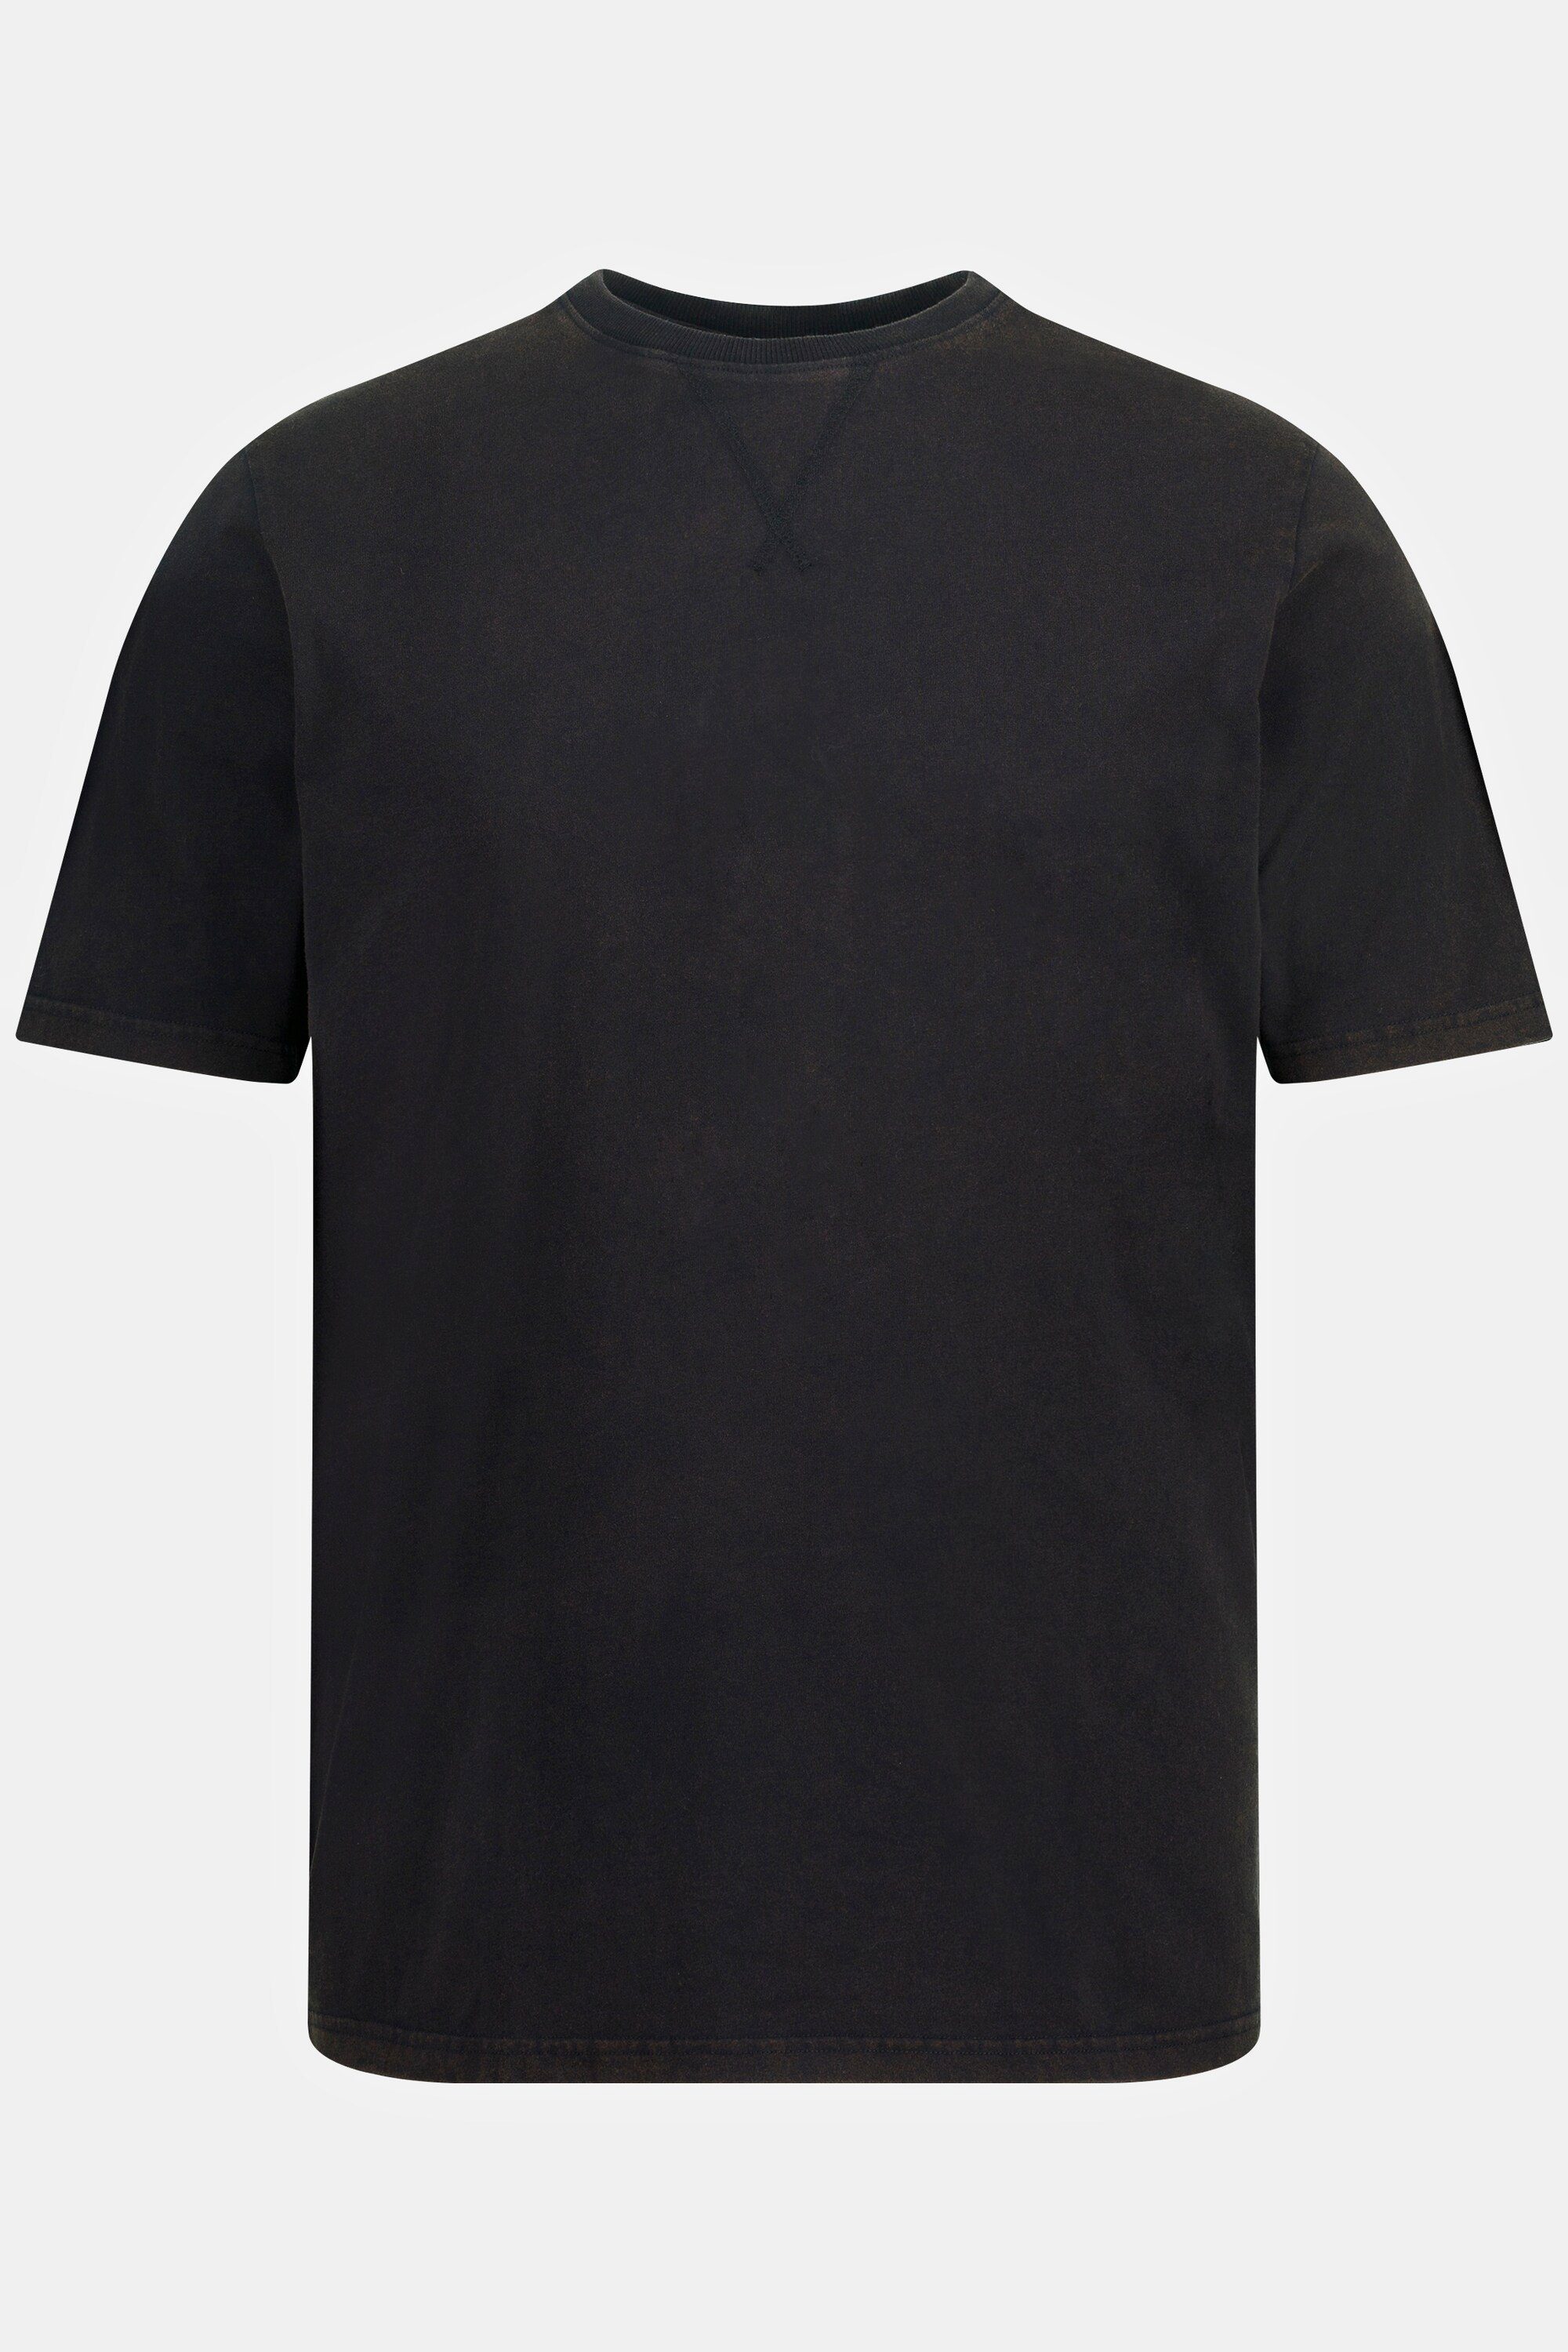 acid schwarz T-Shirt JP1880 Rundhals T-Shirt washed Halbarm